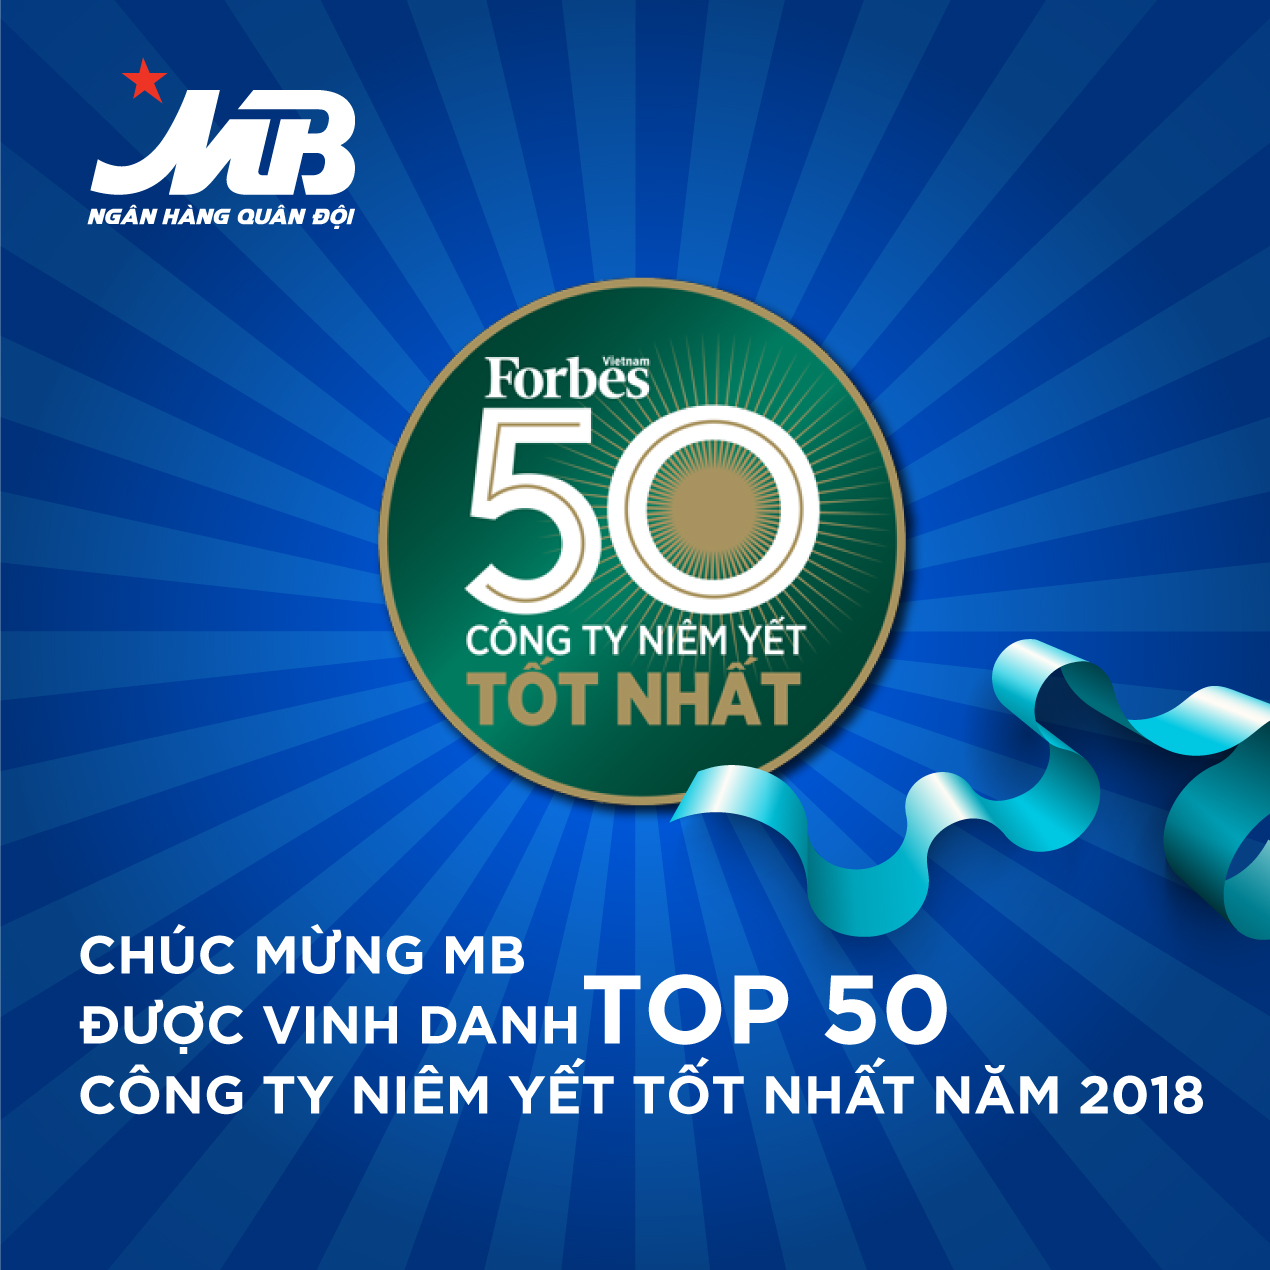 MB – Top 50 Công ty niêm yết tốt nhất Việt Nam 2018 ​